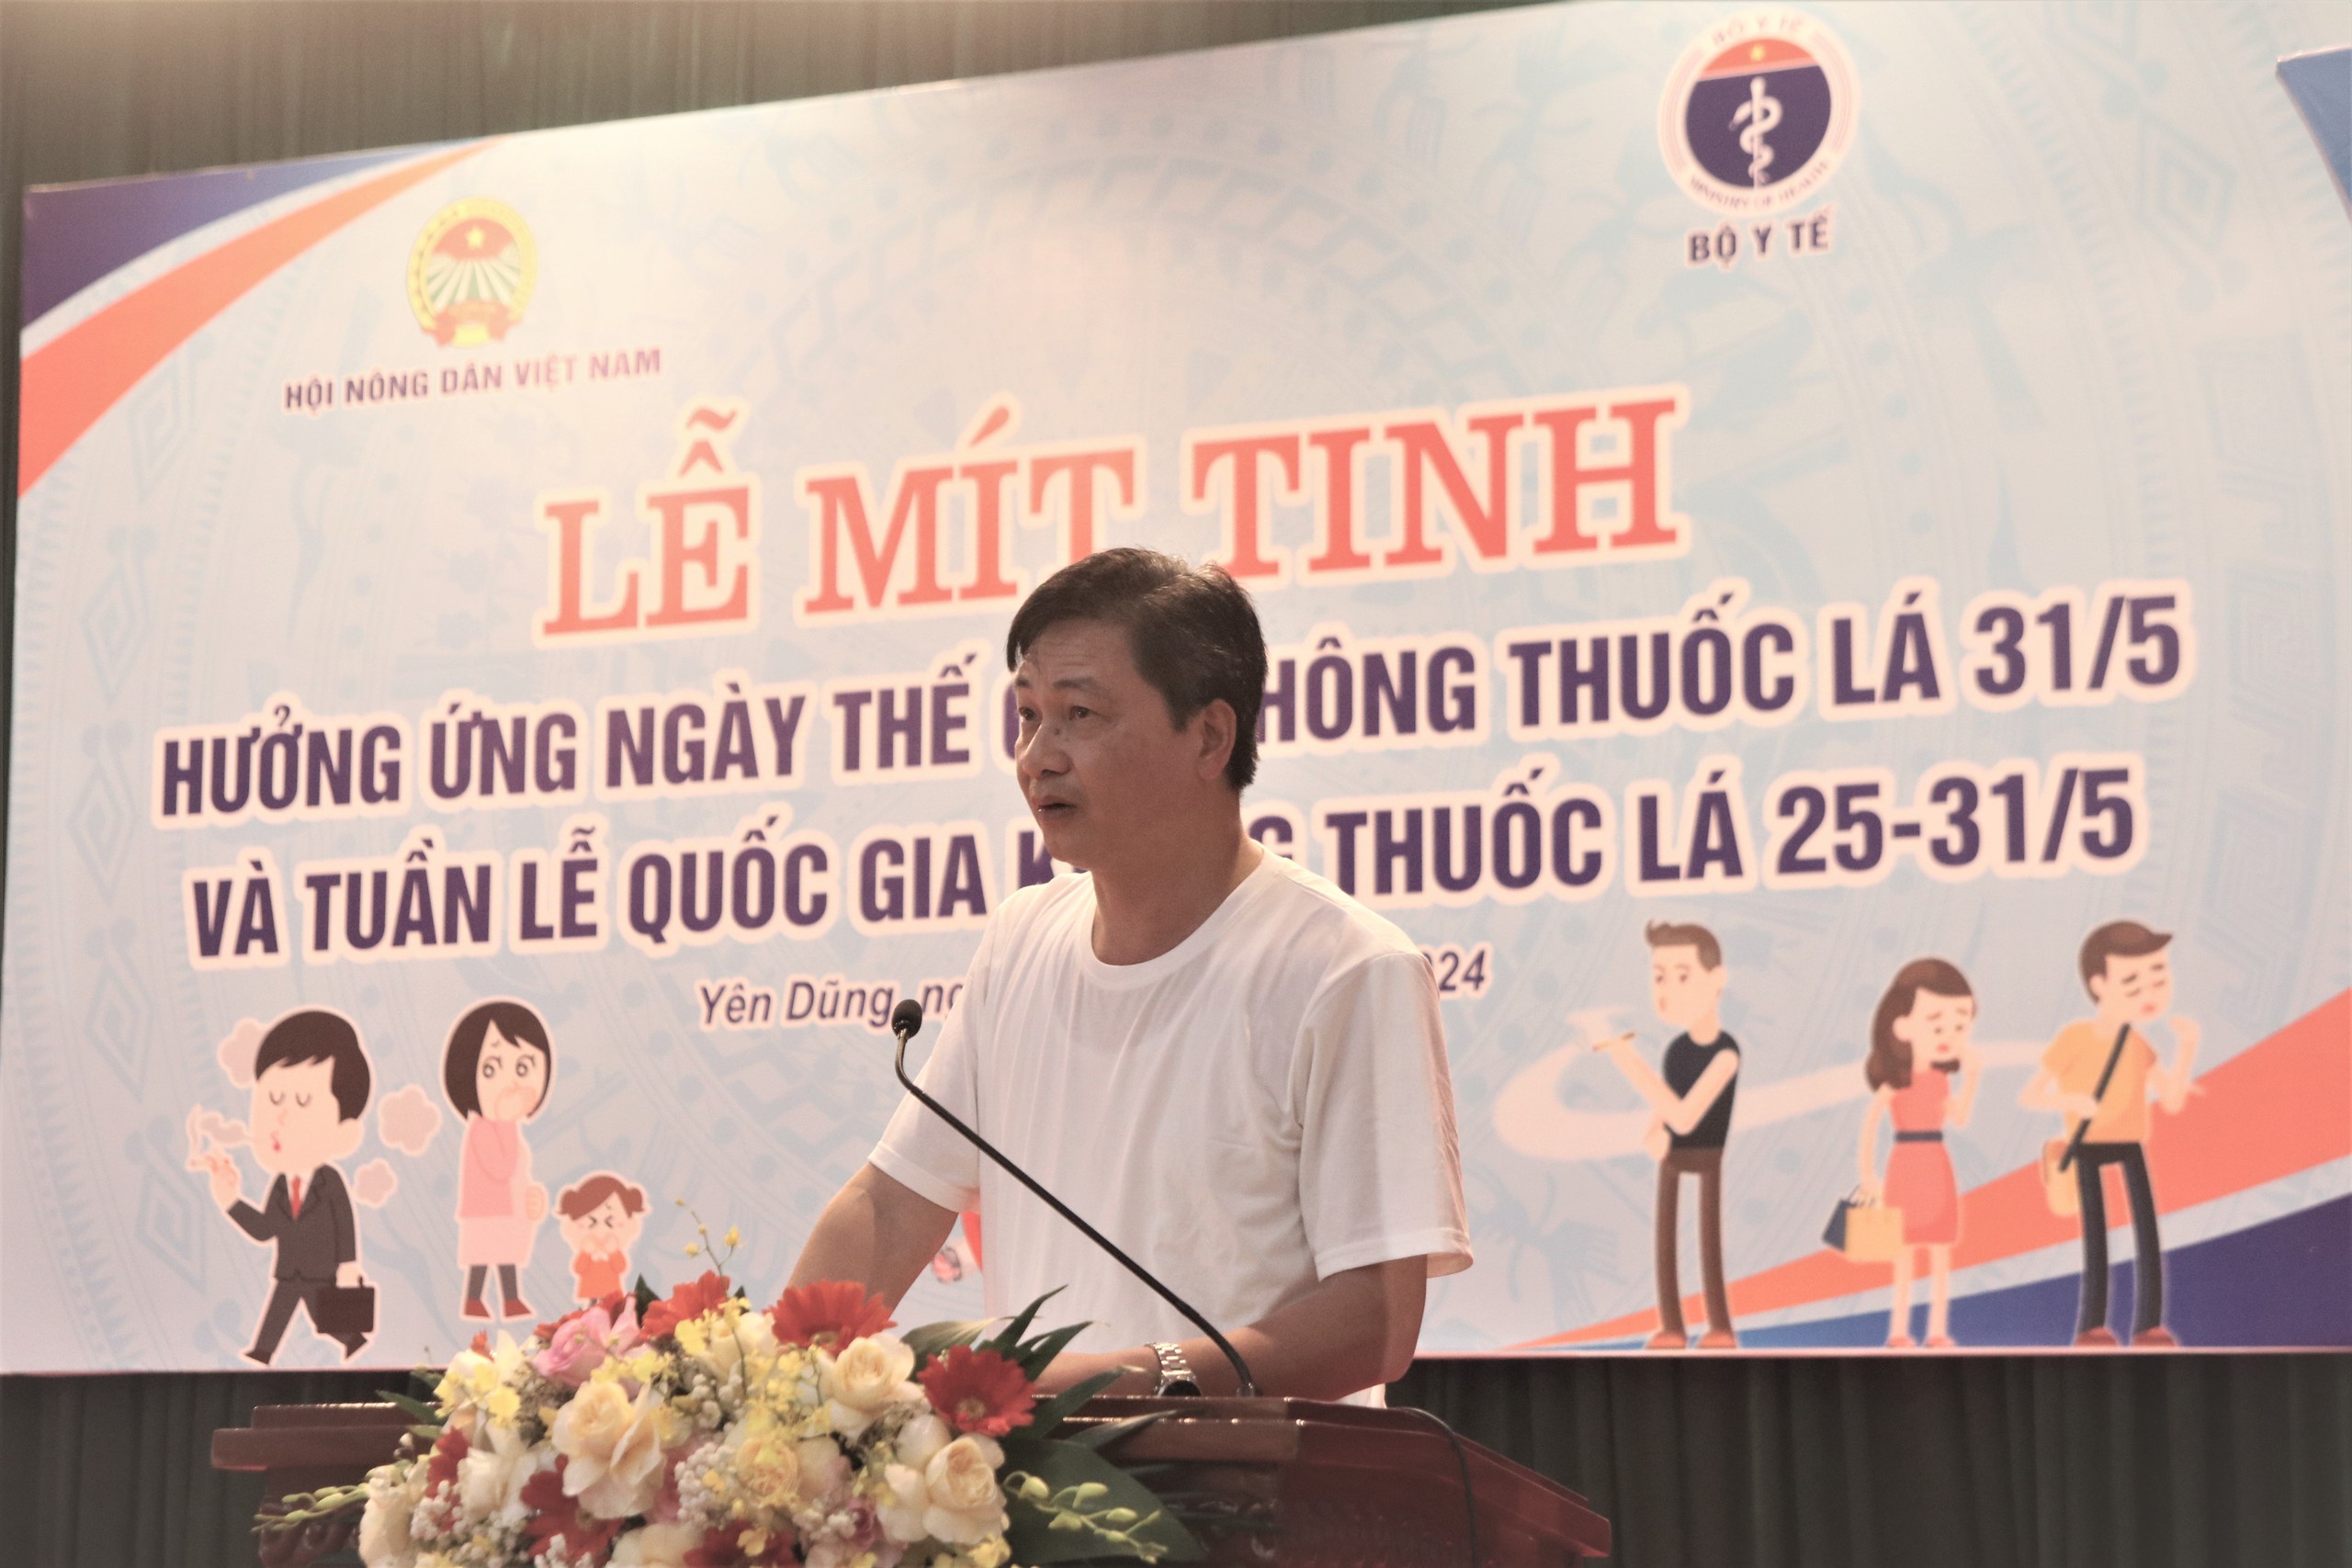 Hội NDVN và Bộ Y tế tổ chức Lễ mít tinh hưởng ứng Ngày Thế giới không thuốc lá tại Bắc Giang